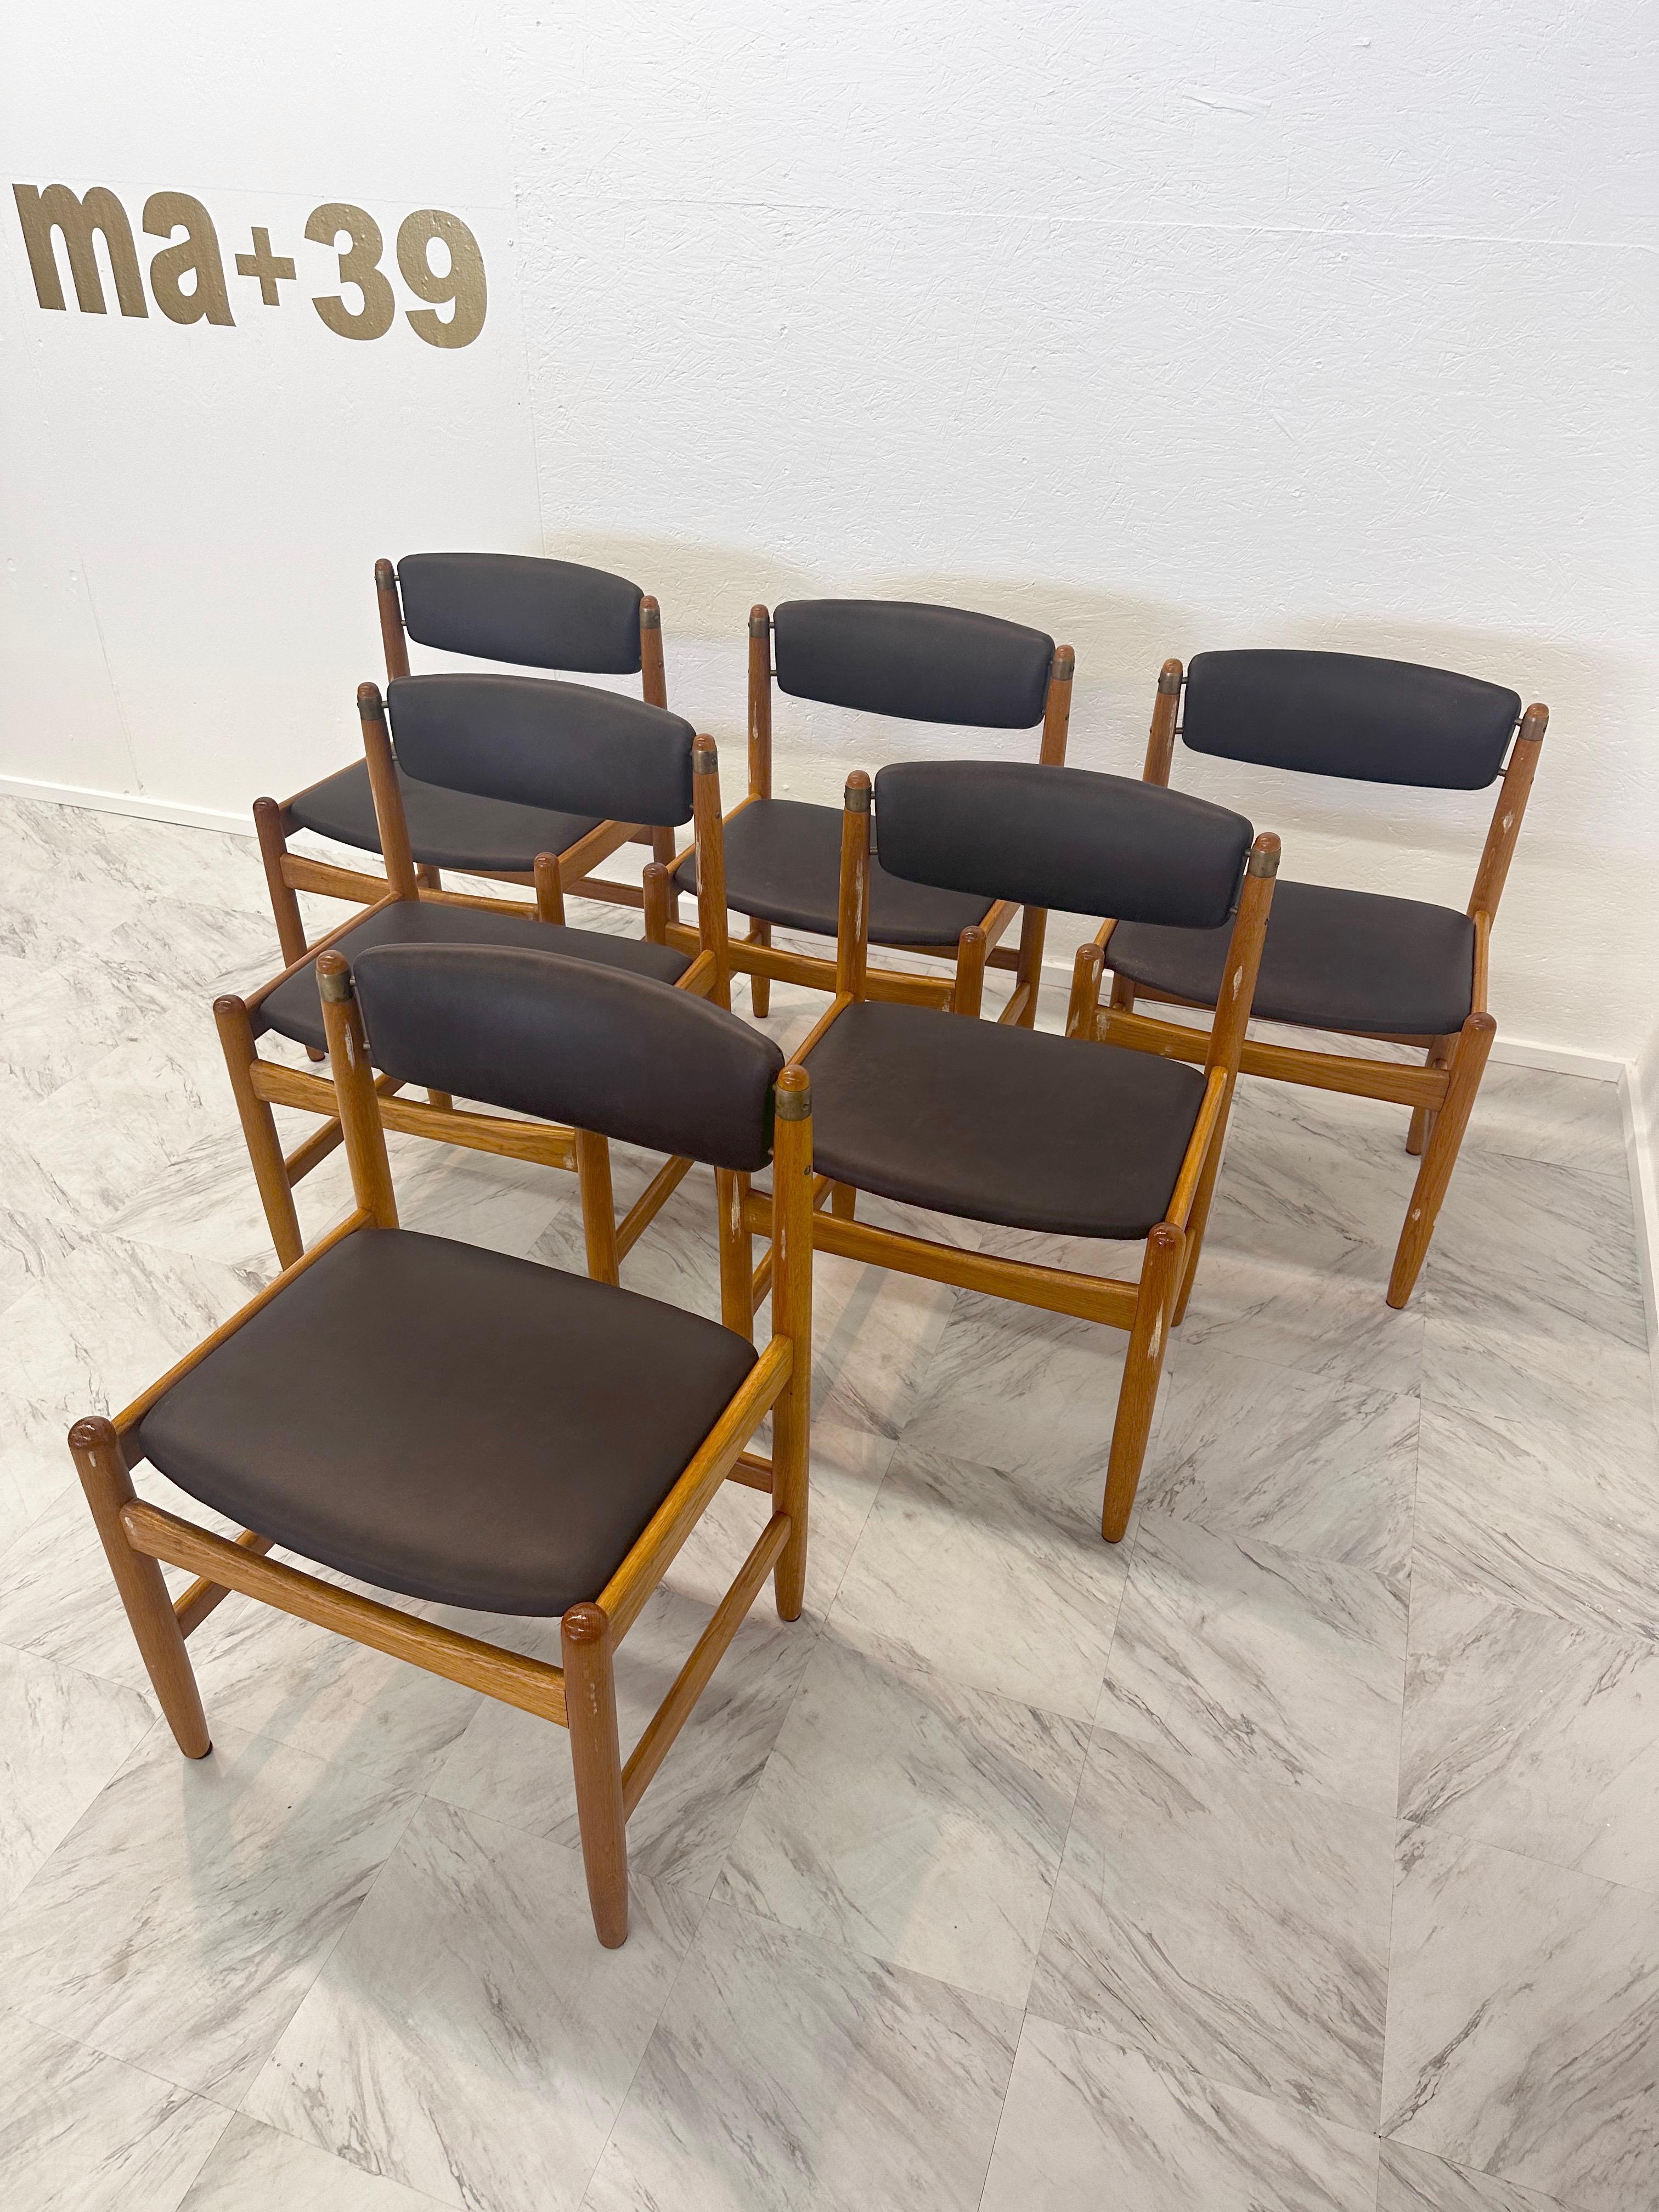 Dieser Satz von 6 Stühlen des Modells 537 Oresund wurde von Borge Mogensen für Karl Andersson & Söner entworfen. Es wird seit 1955 produziert. Diese Stühle stammen aus der ersten Produktionsperiode. Das Design wurde von amerikanischen Shaker-Möbeln